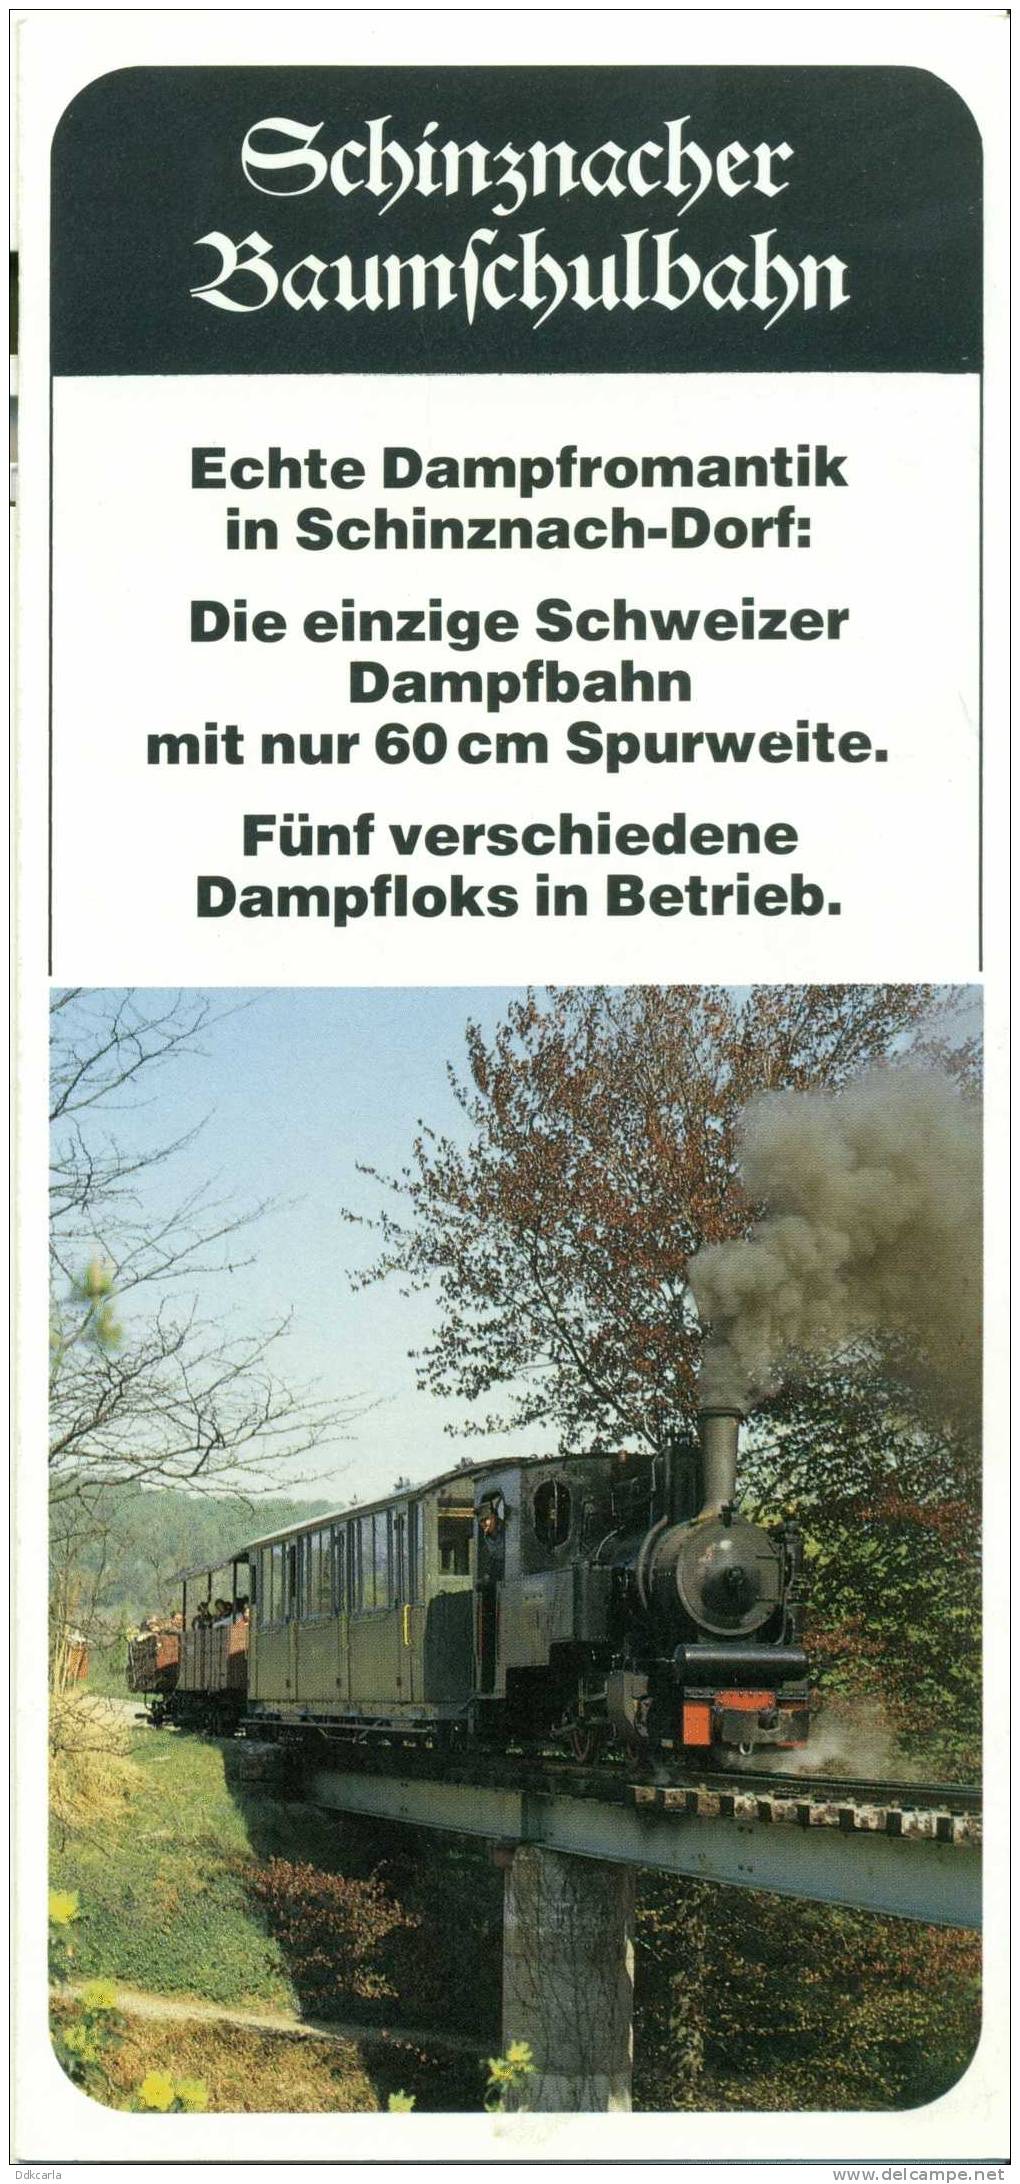 Dépliant - Schinznacher Baumschulbahn - Transport